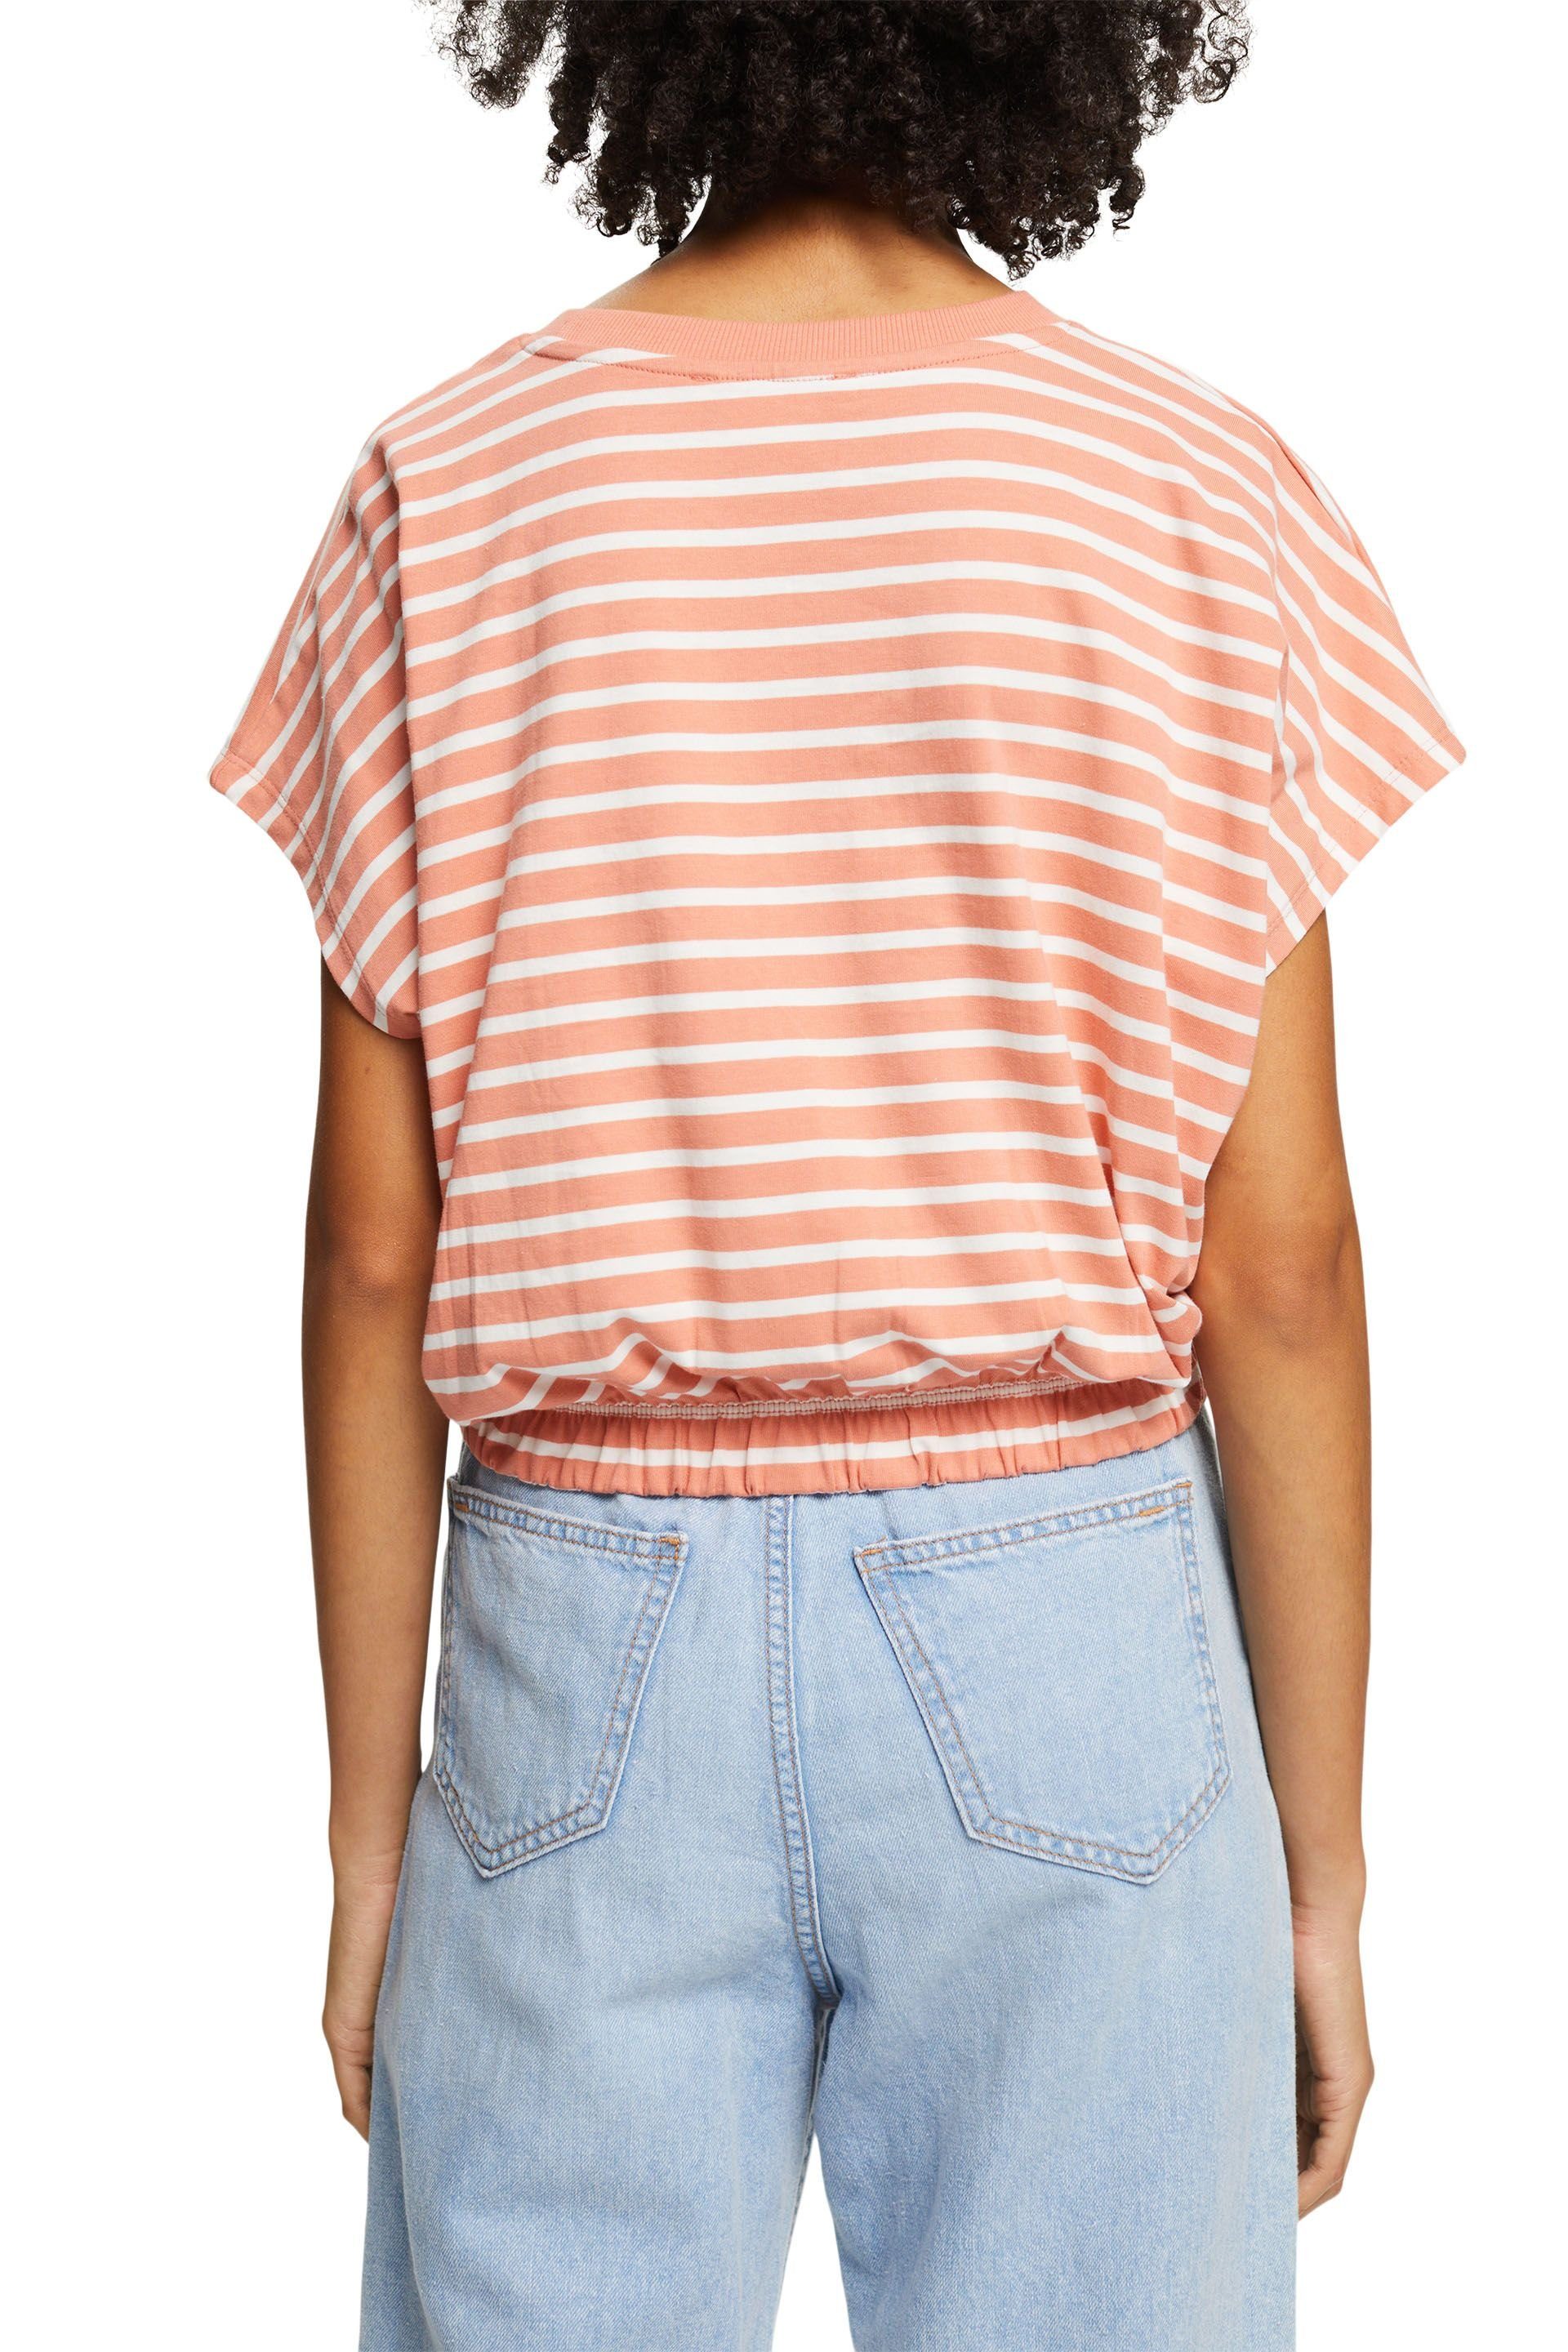 Esprit T-Shirt peach